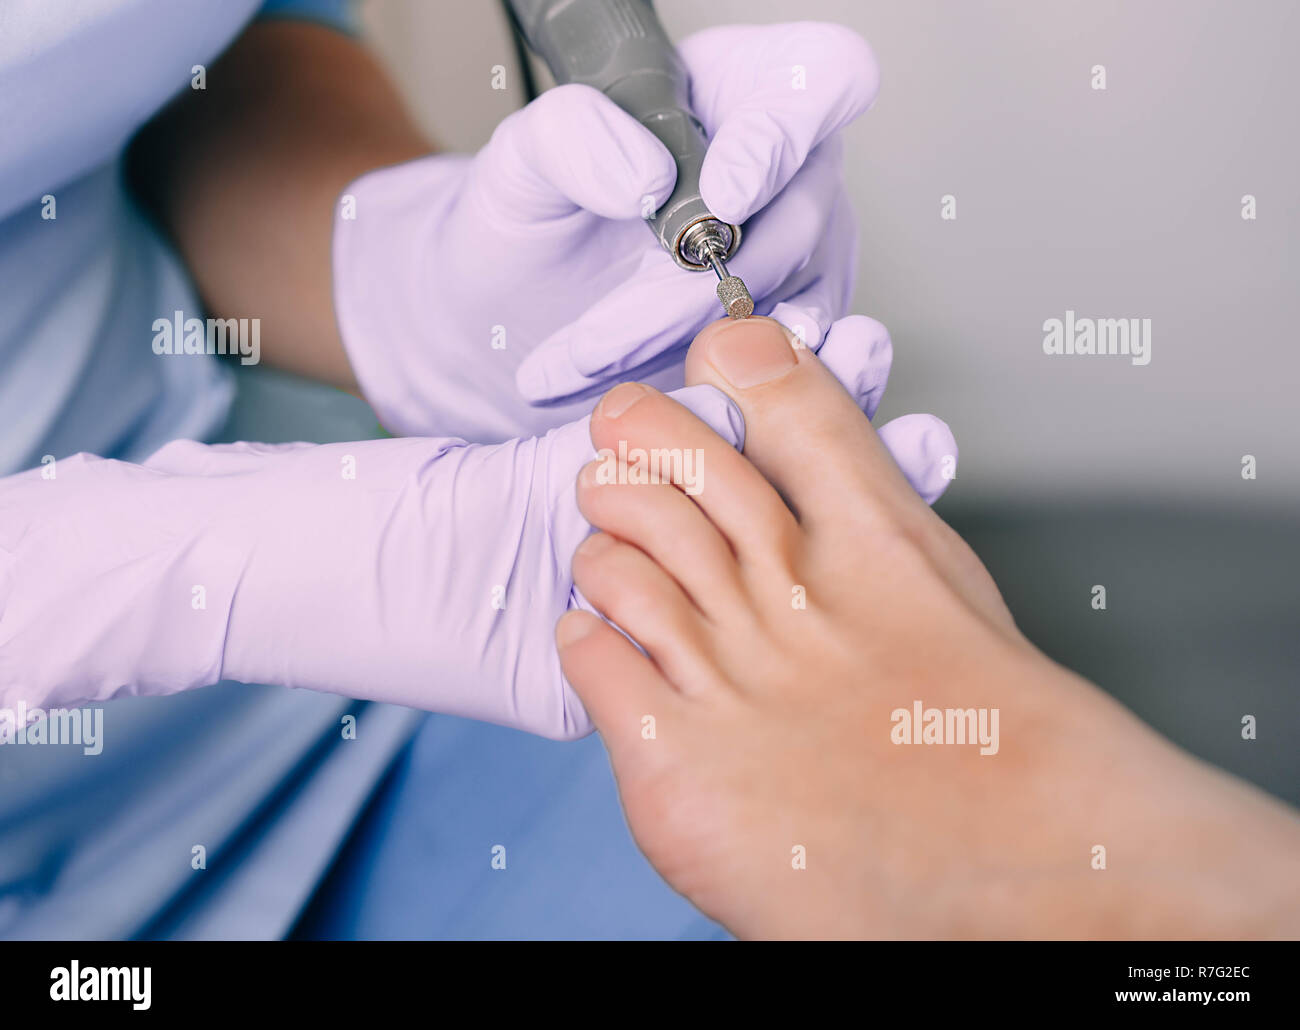 Fußpflege Behandlung von Fuß des Patienten, Pediküre Behandlung Stockfoto